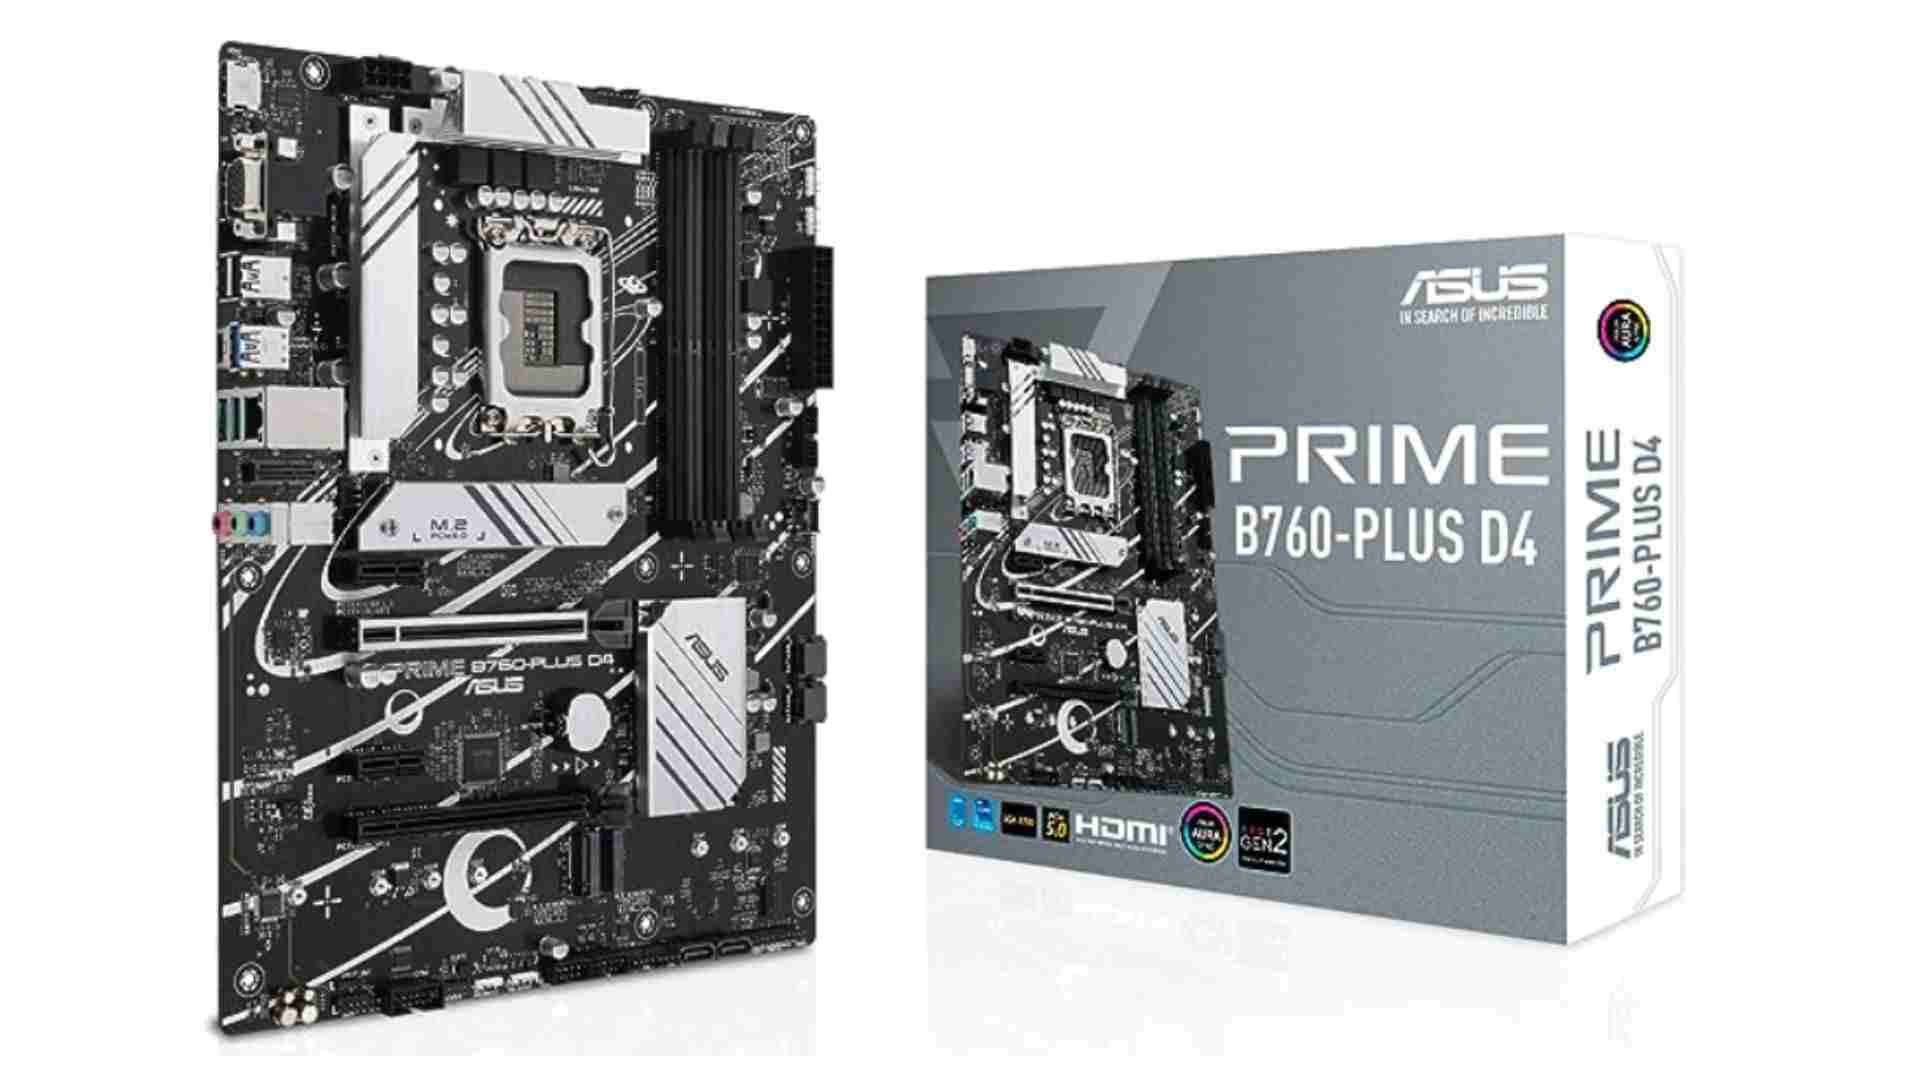 ASUS Prime B760-PLUS D4 Intel motherboard: